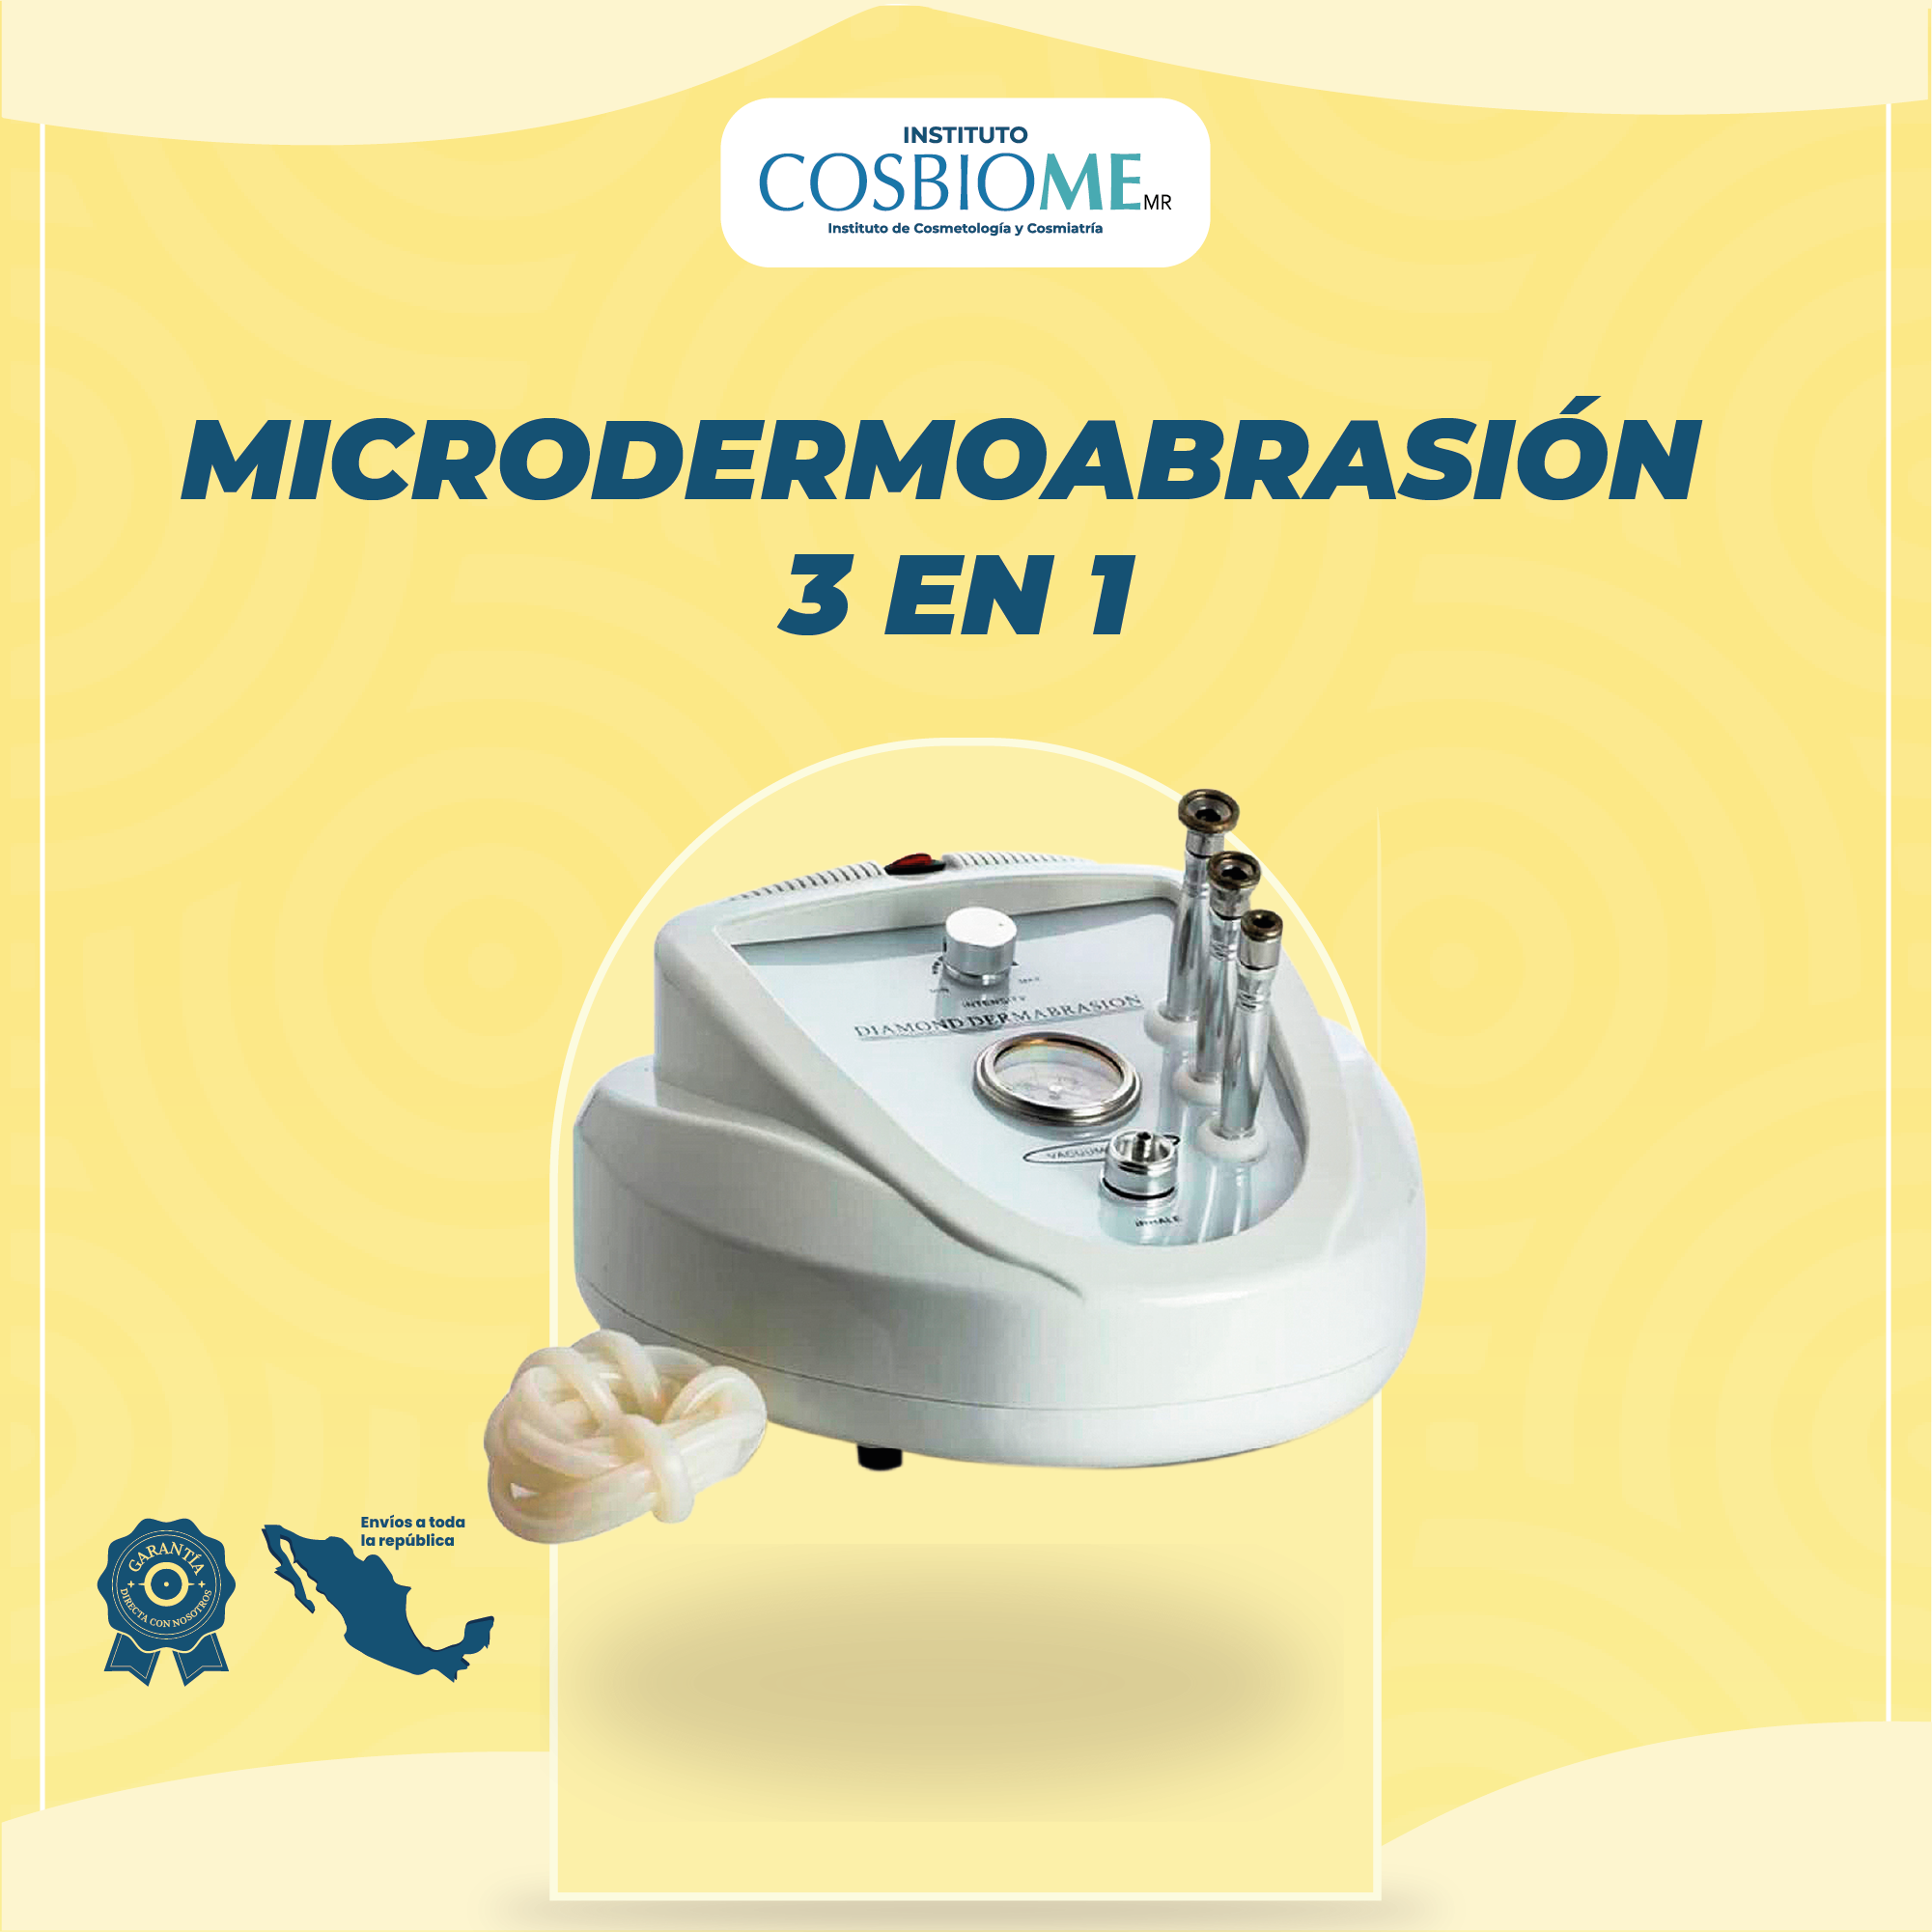 Microdermoabrasión 3 en 1